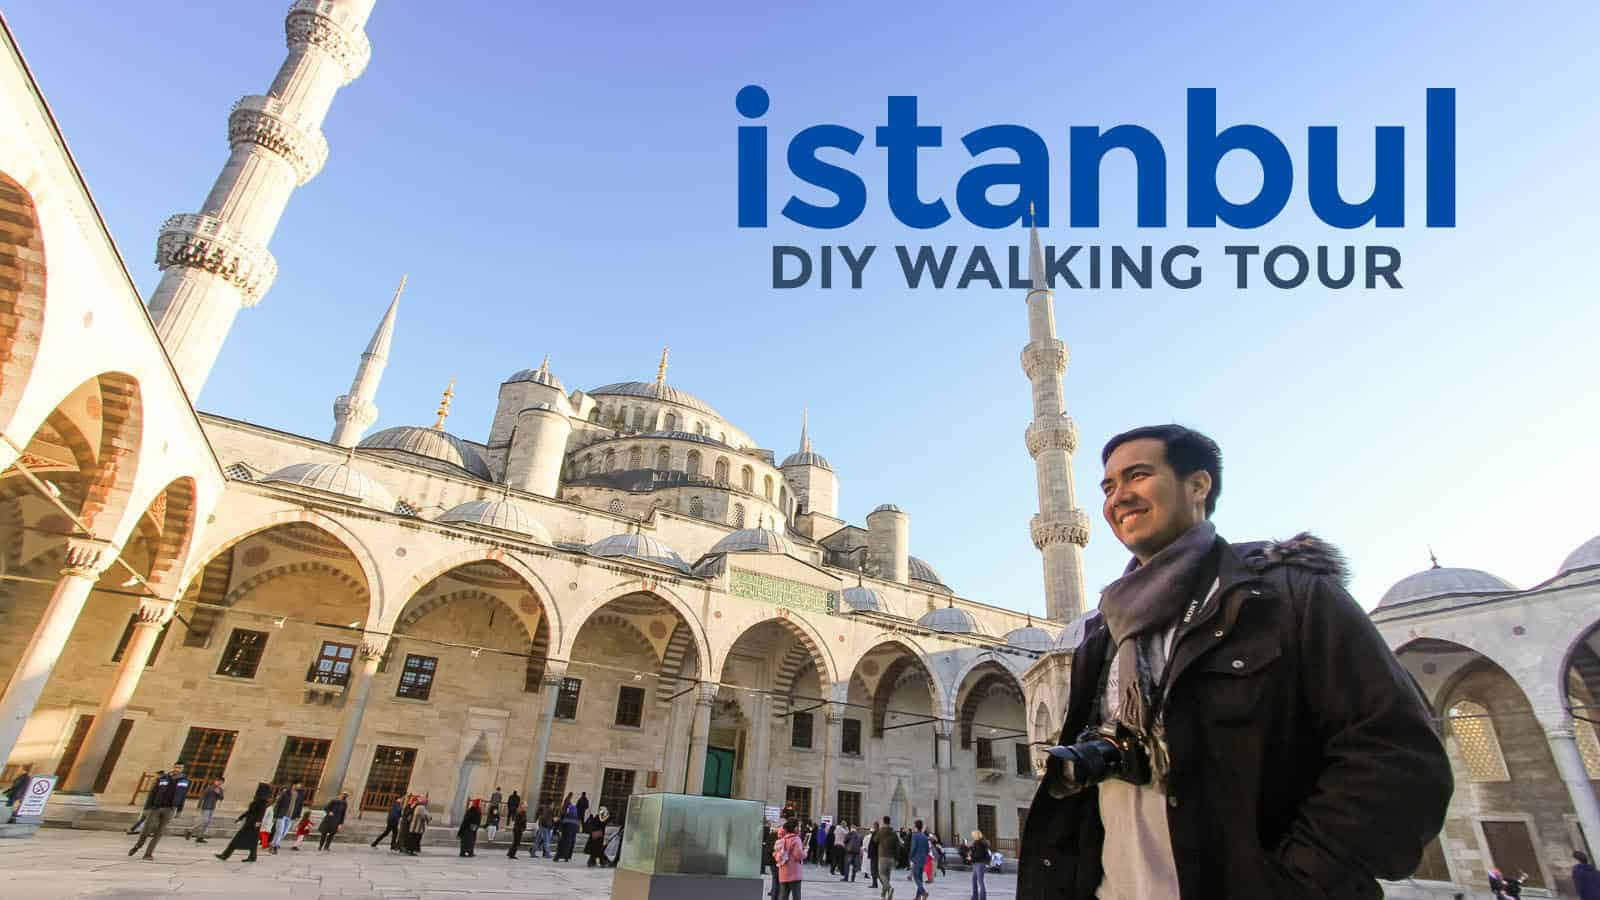 Istanbul Diy Walking Tour